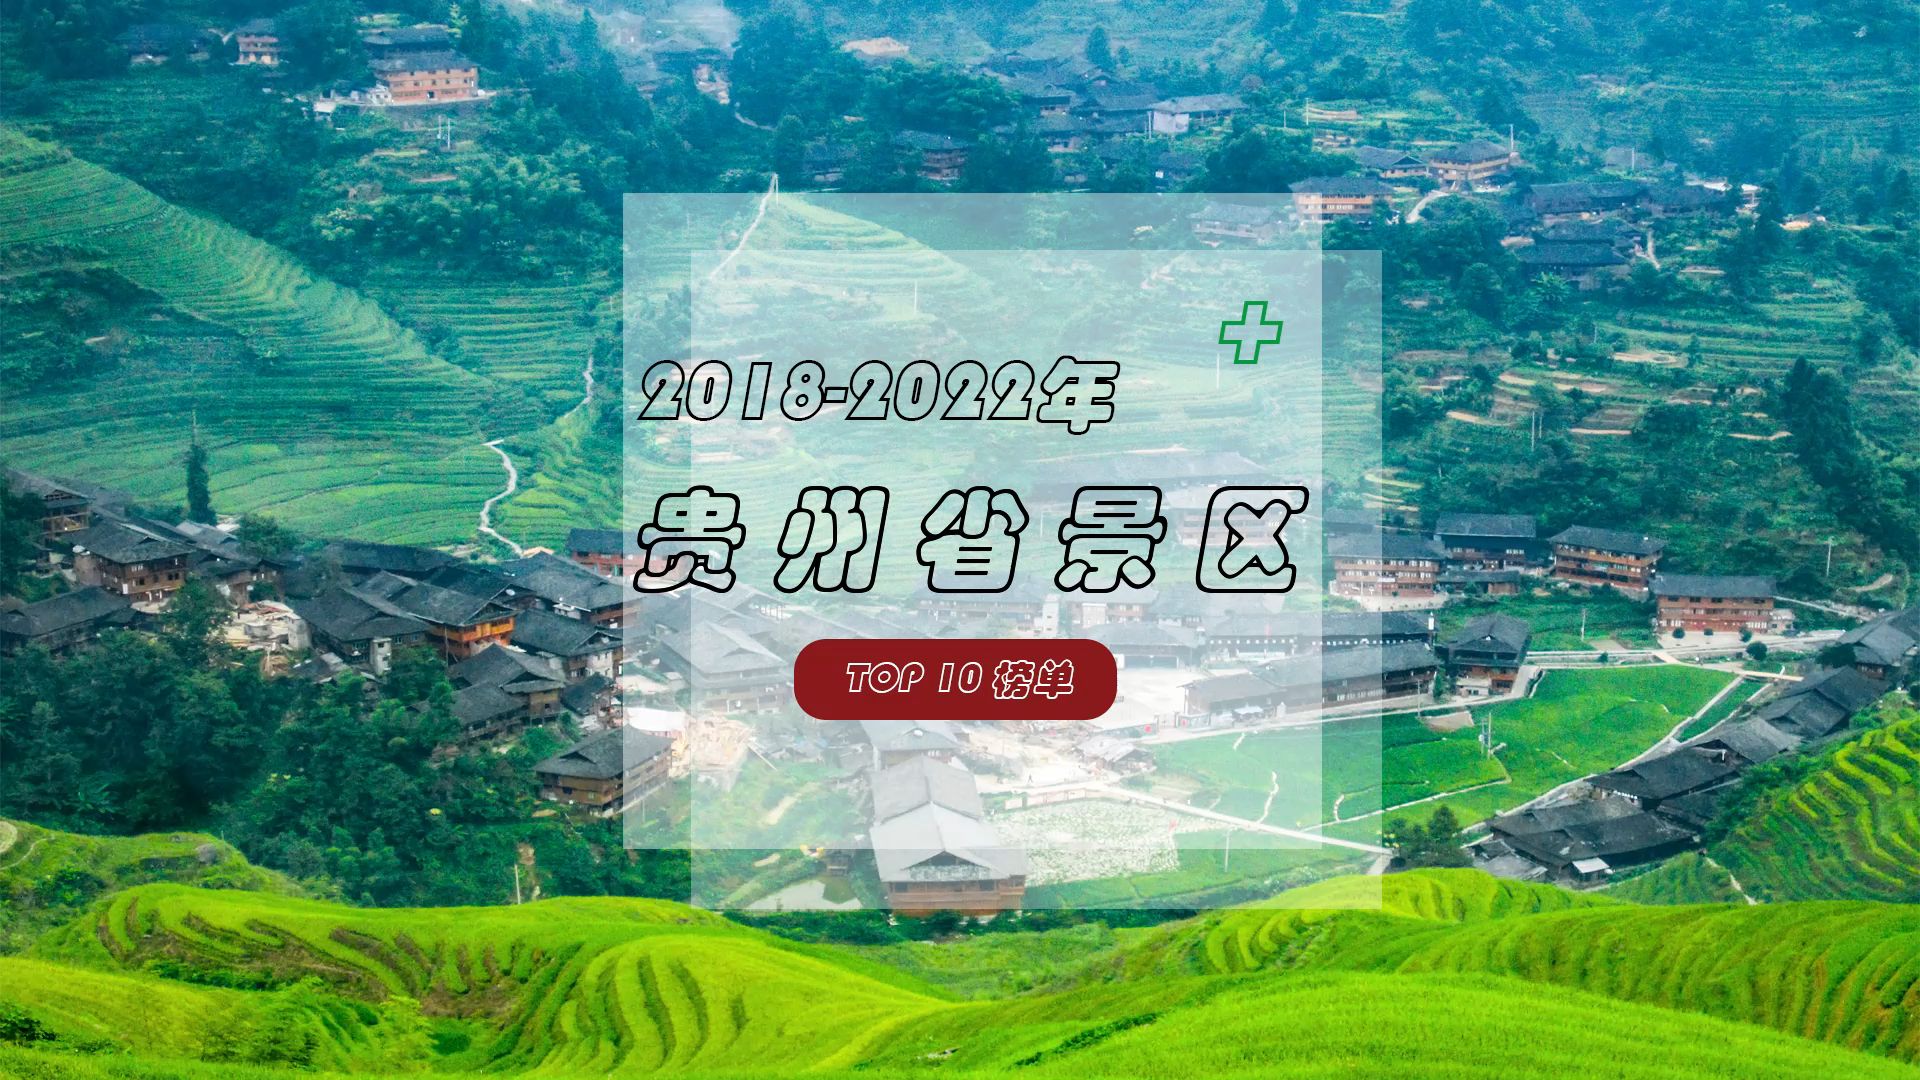 2018-2022年贵州省景区TOP10榜单，我在贵州等你